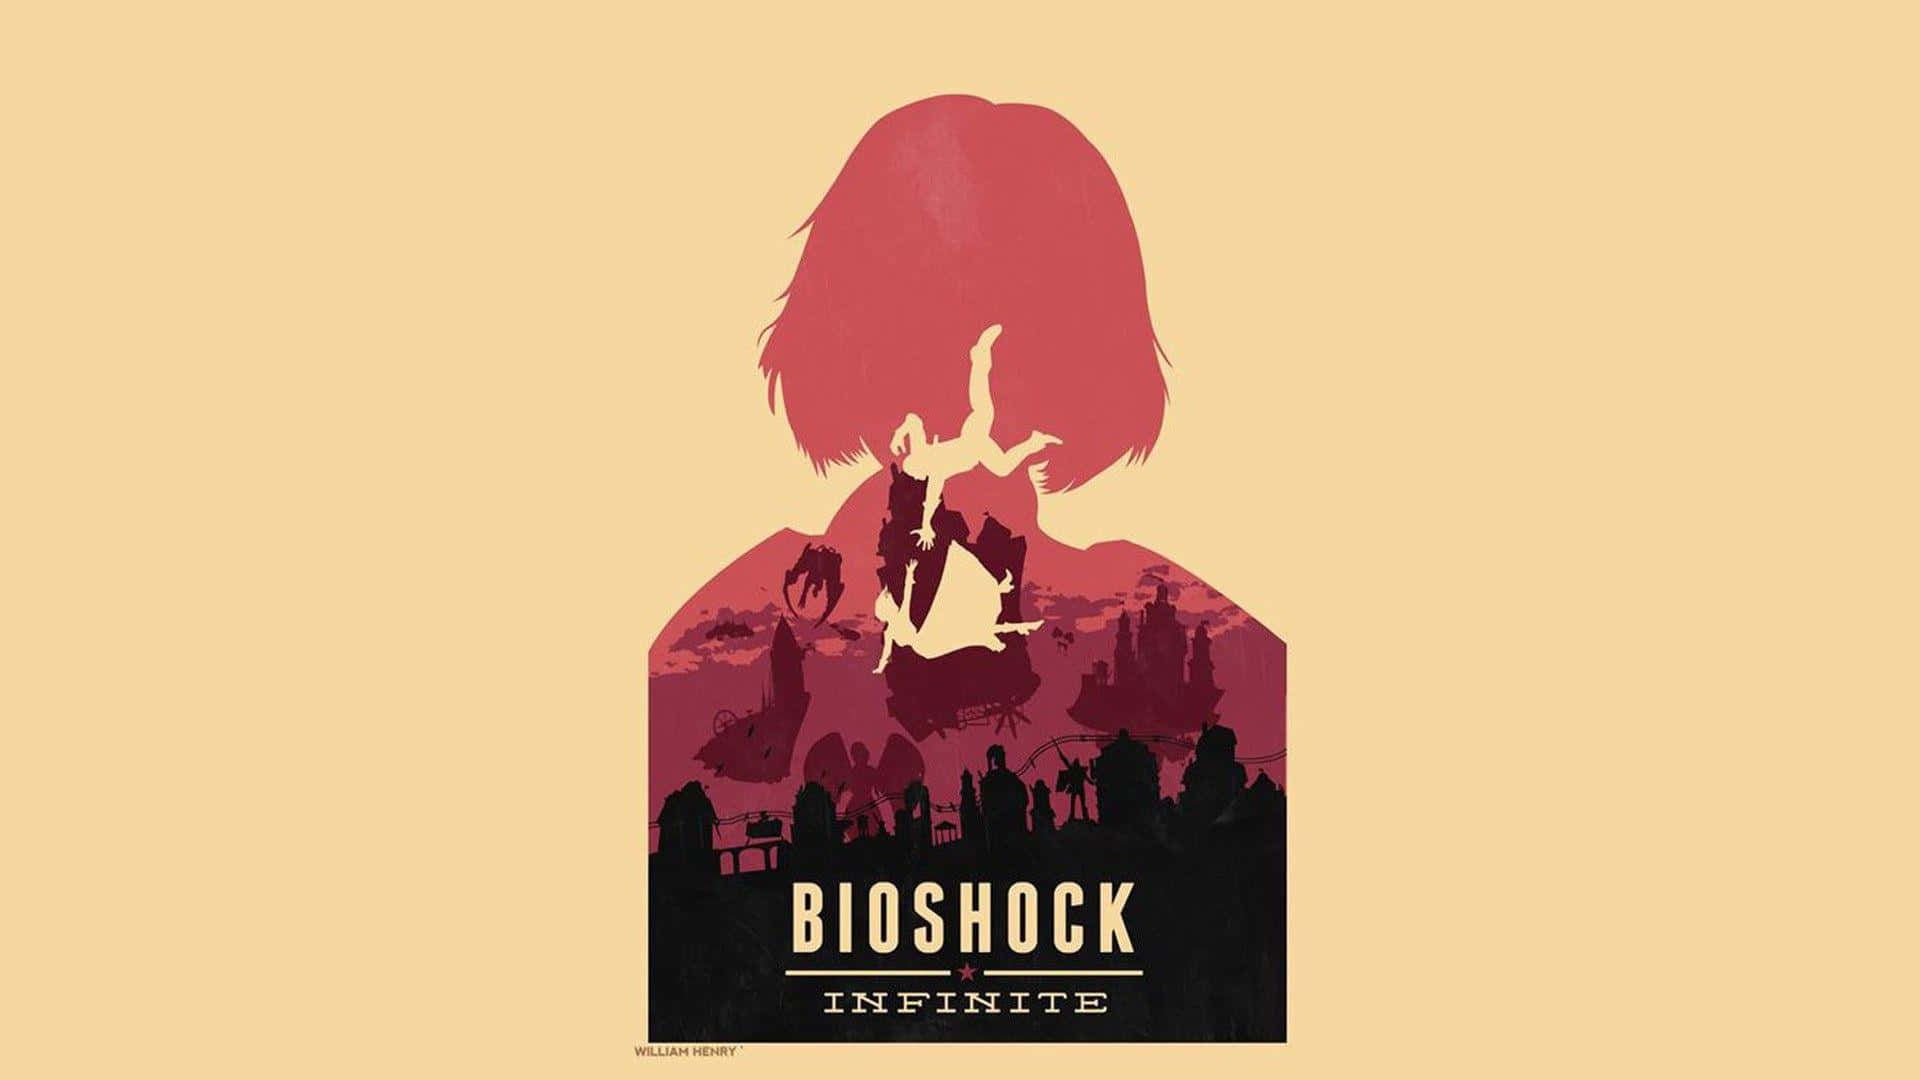 “Explore the World of Bioshock Infinite”